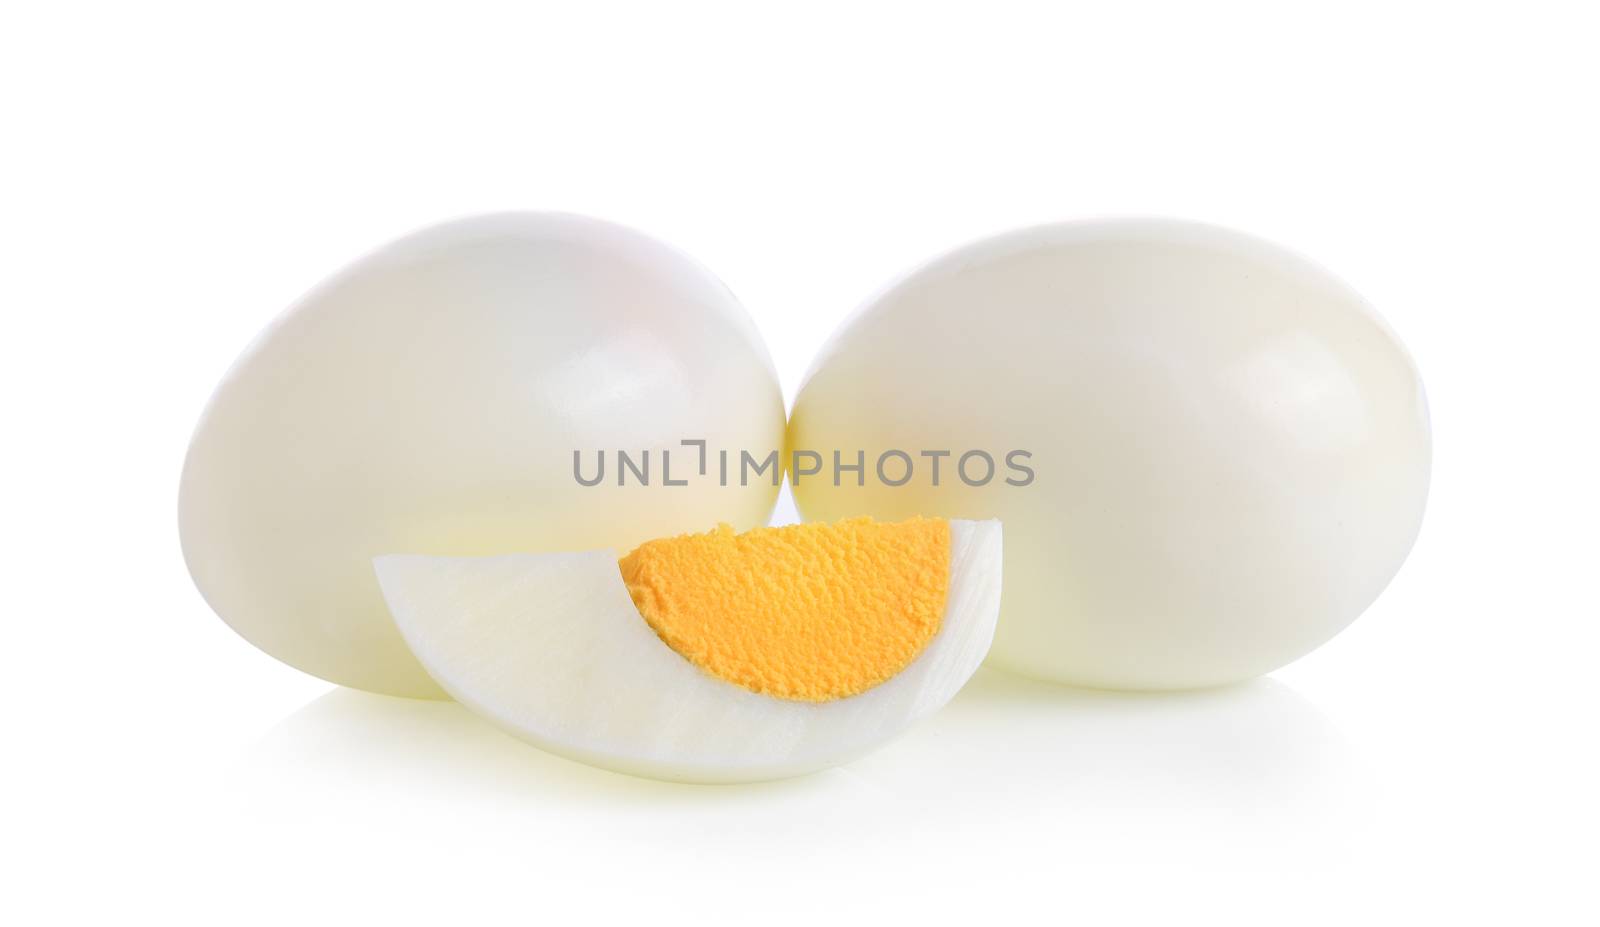 boiled egg on white background